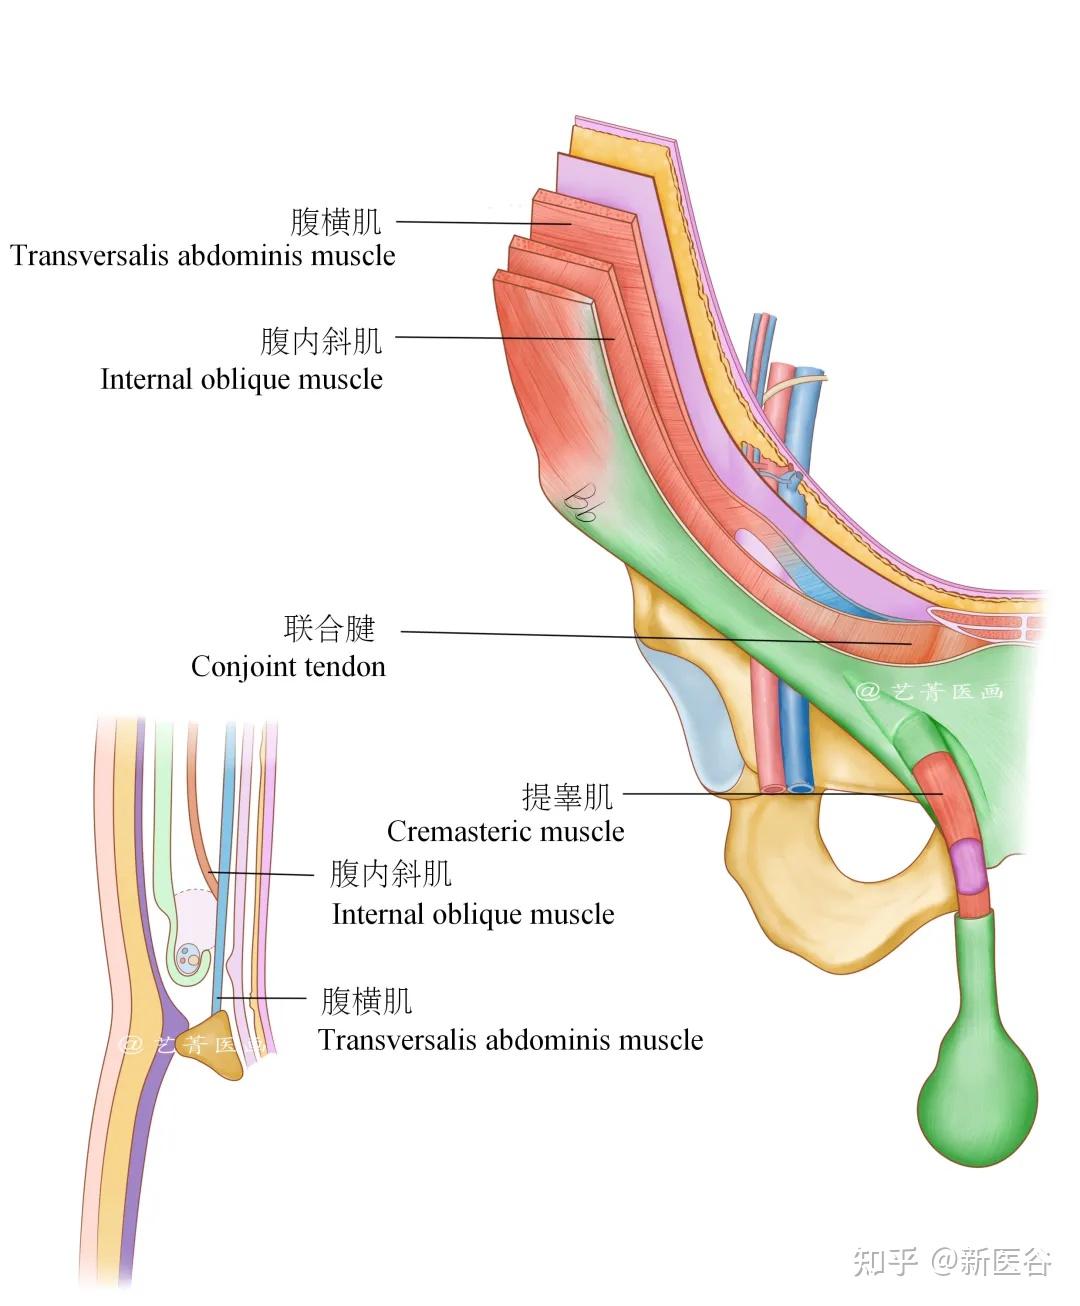 补洞第一步便是了解其位置和构造,疝修补术首先要清楚腹股沟区解剖